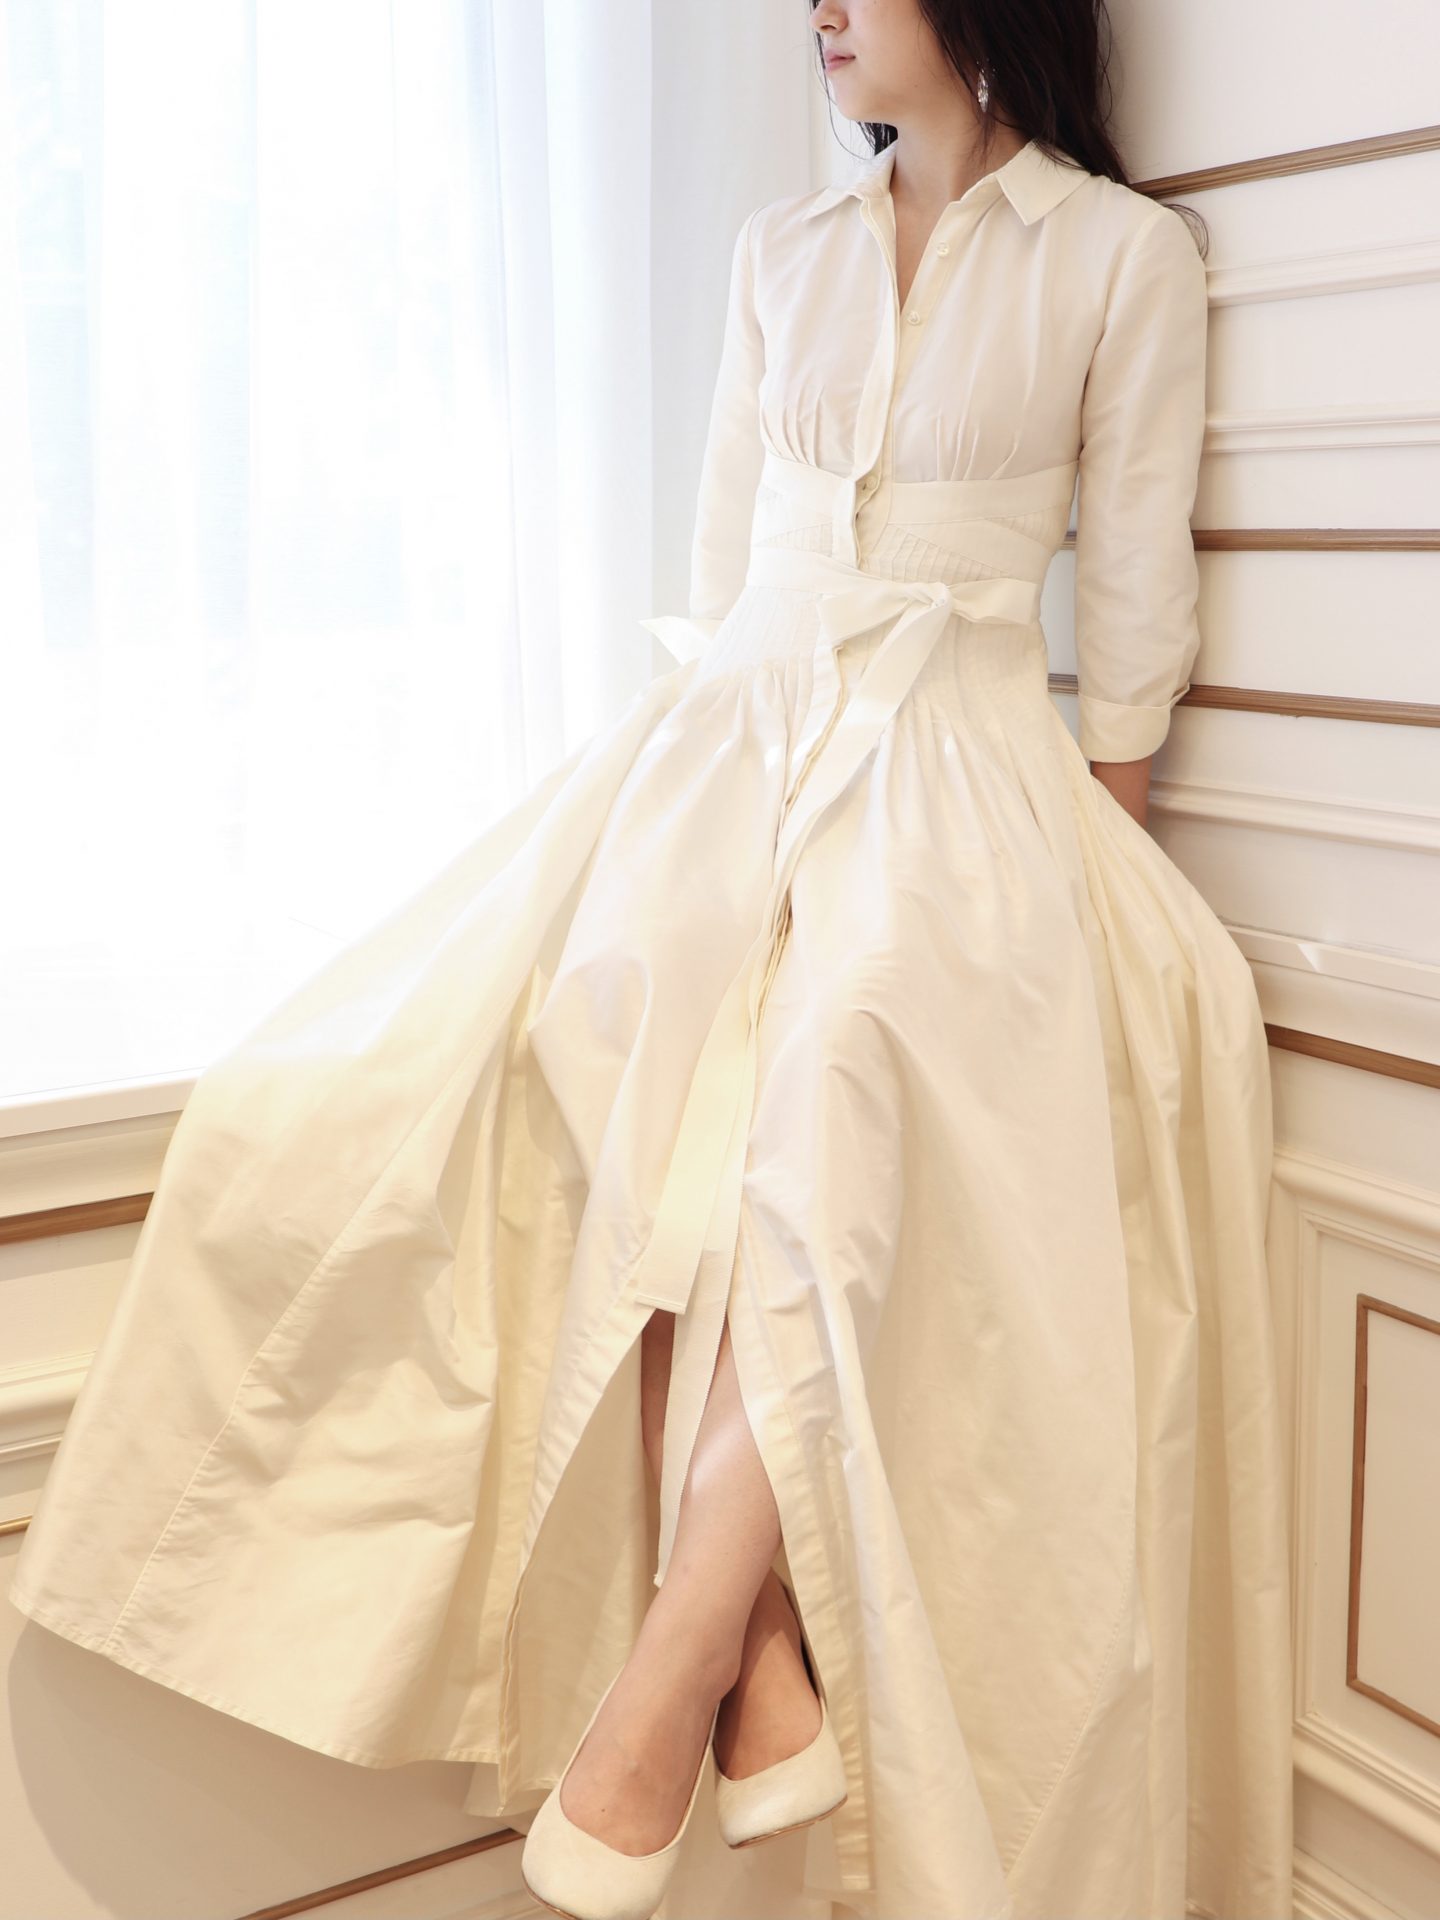 アットホームでお洒落な雰囲気の花嫁におすすめのキャロリーナヘレラのウェディングドレス